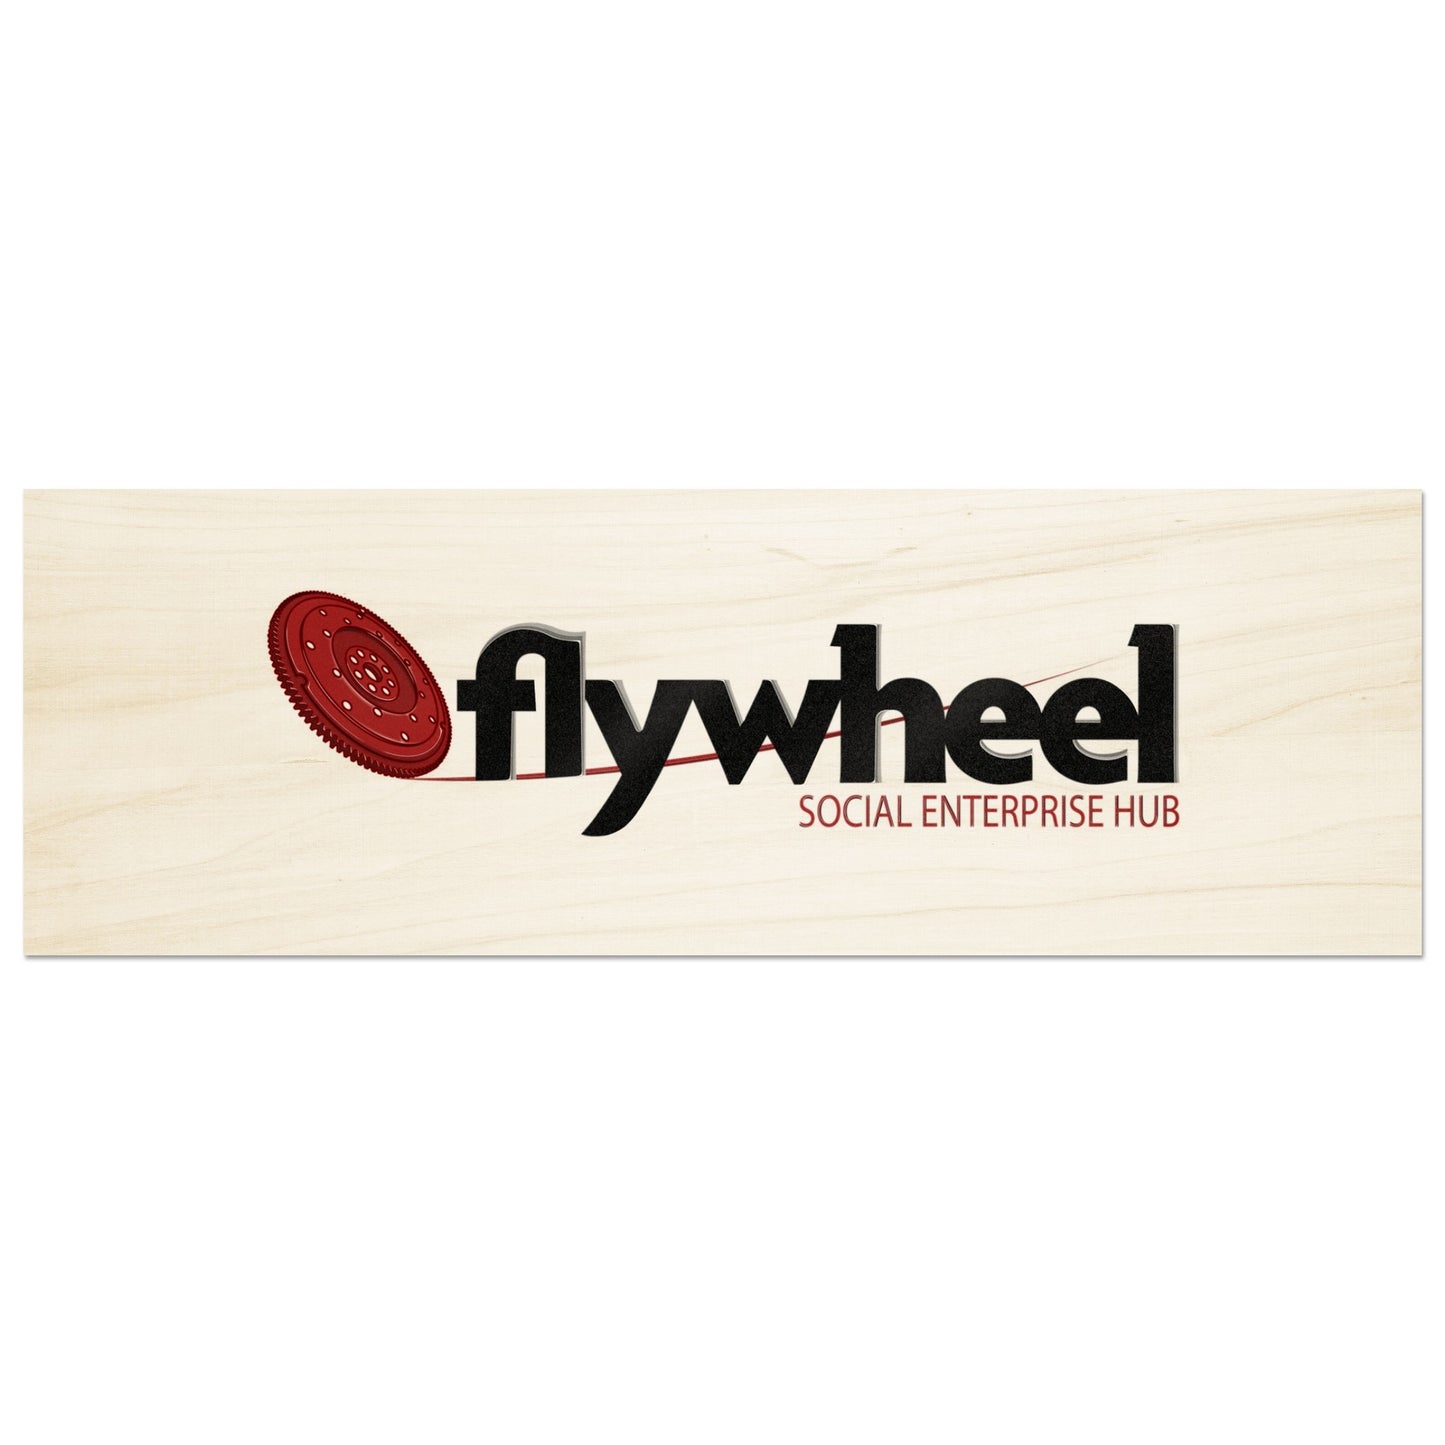 Flywheel Social Enterprise Hub - Wood Prints